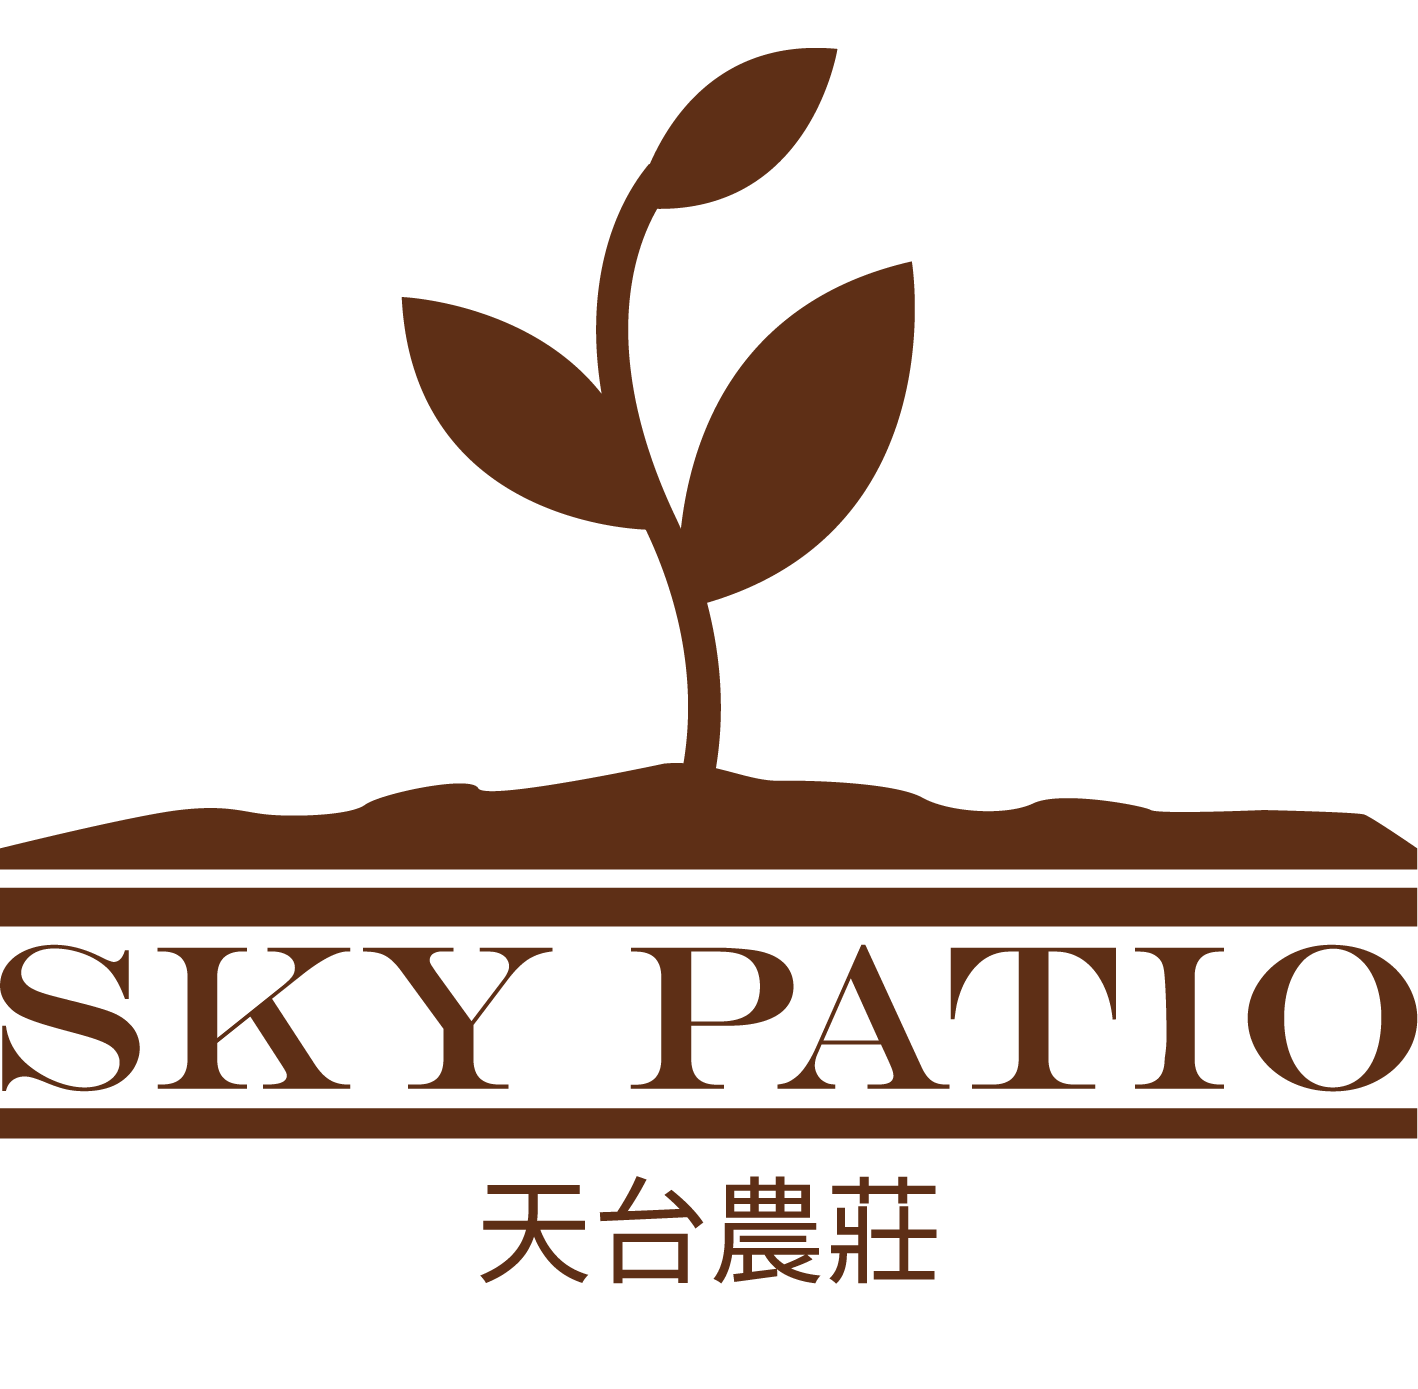 觀塘 Sky Patio 天台農莊